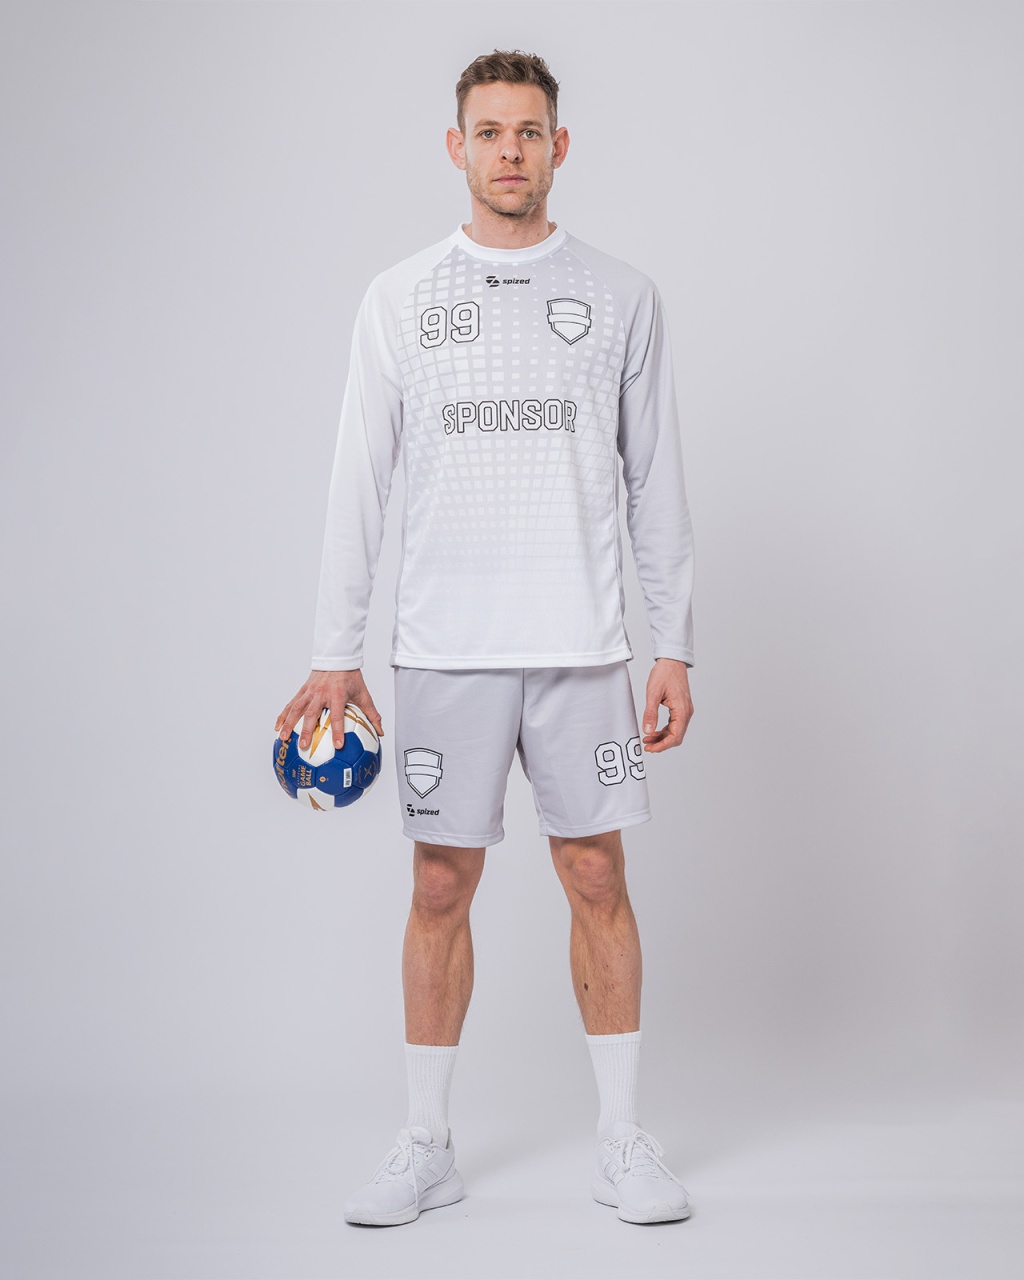 Viborg men's handball jersey l/s